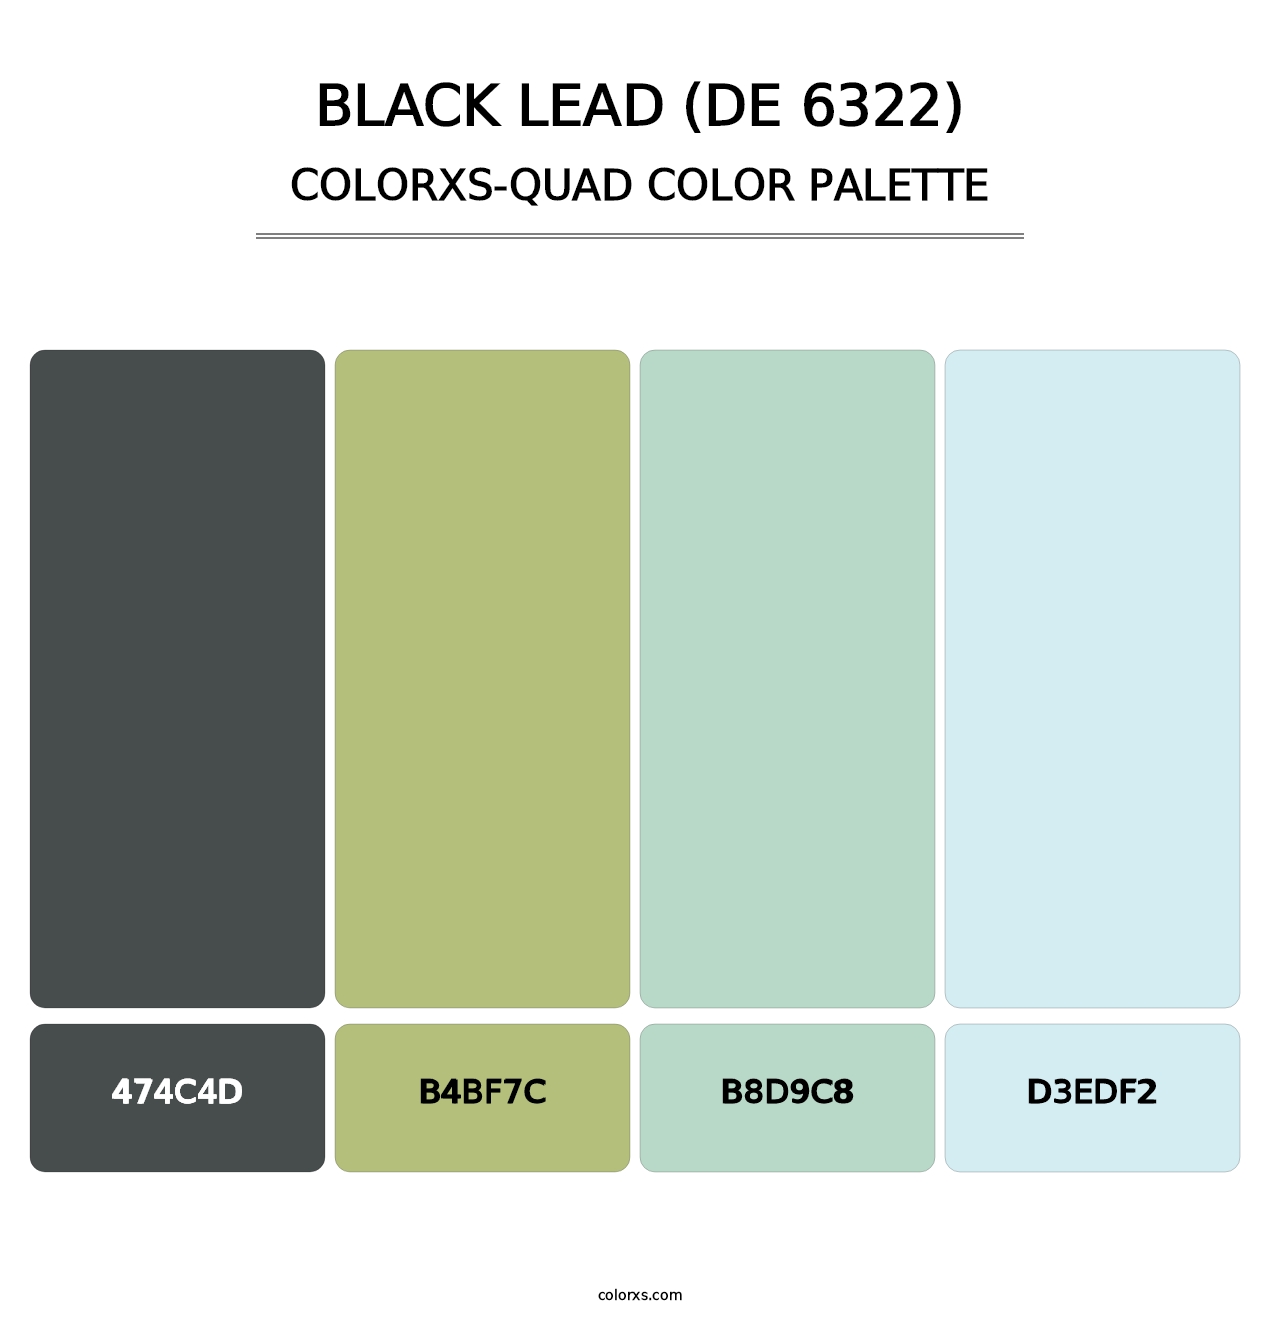 Black Lead (DE 6322) - Colorxs Quad Palette